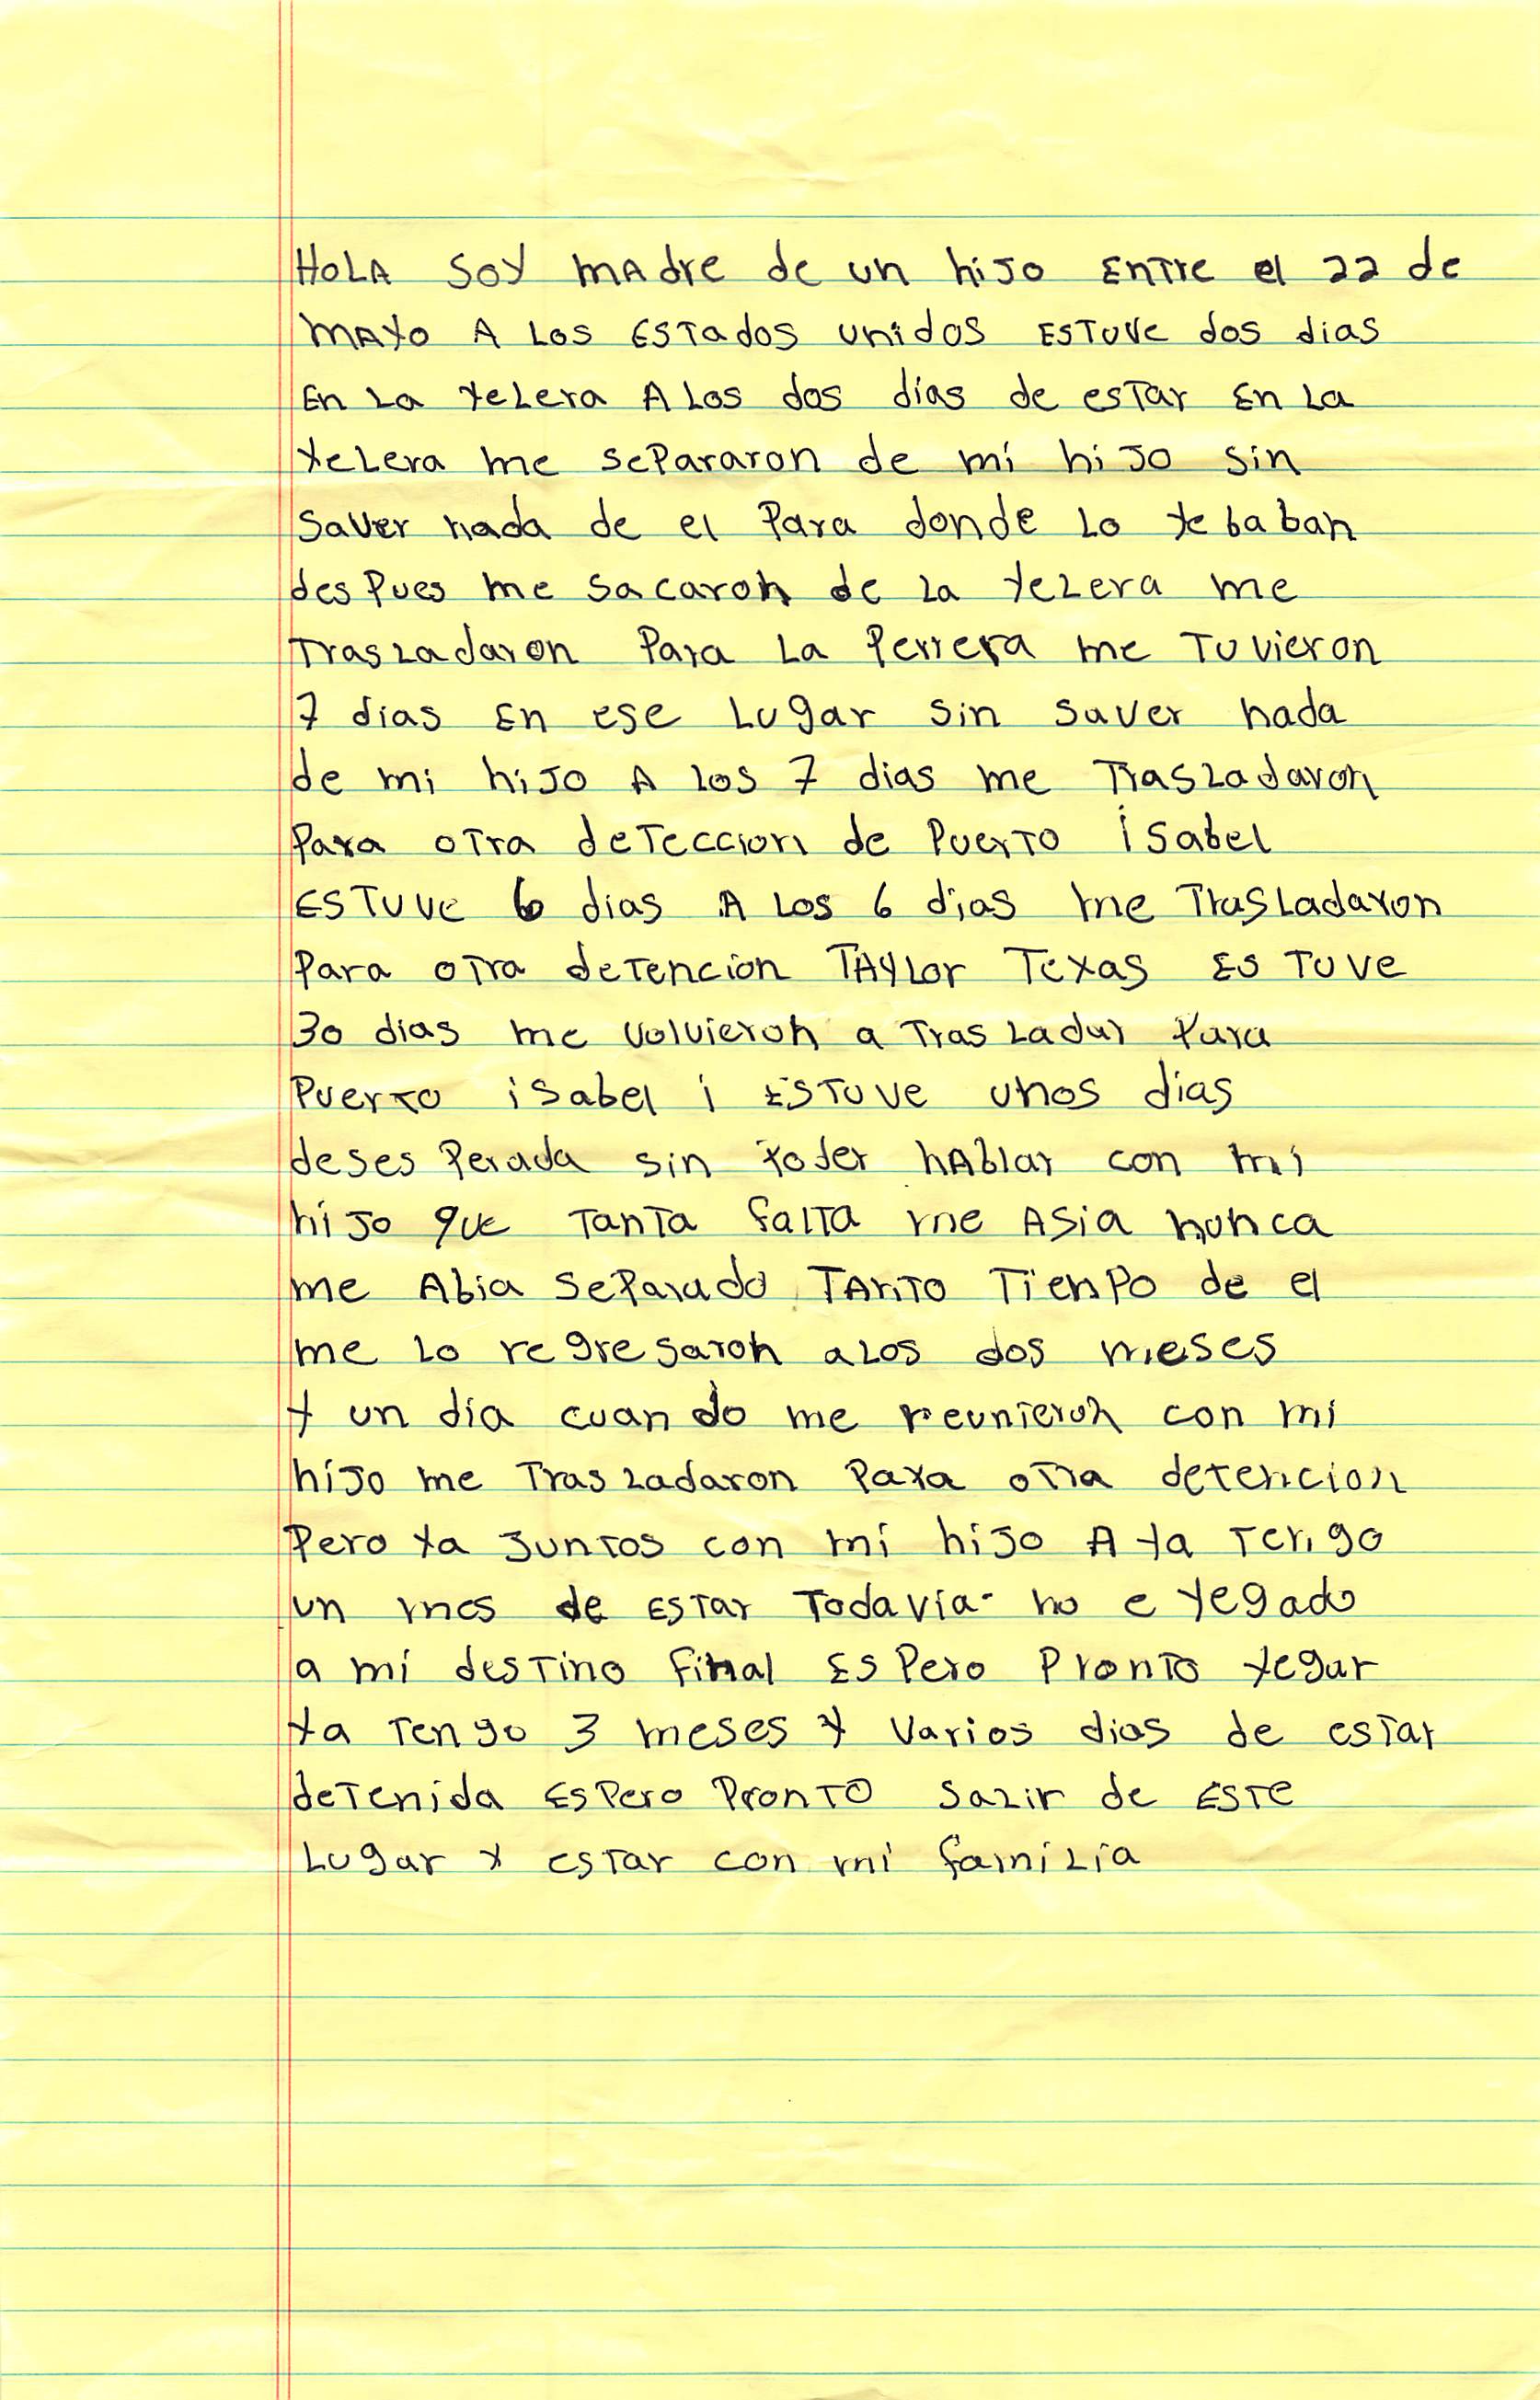 Sofia's Handwritten Letter